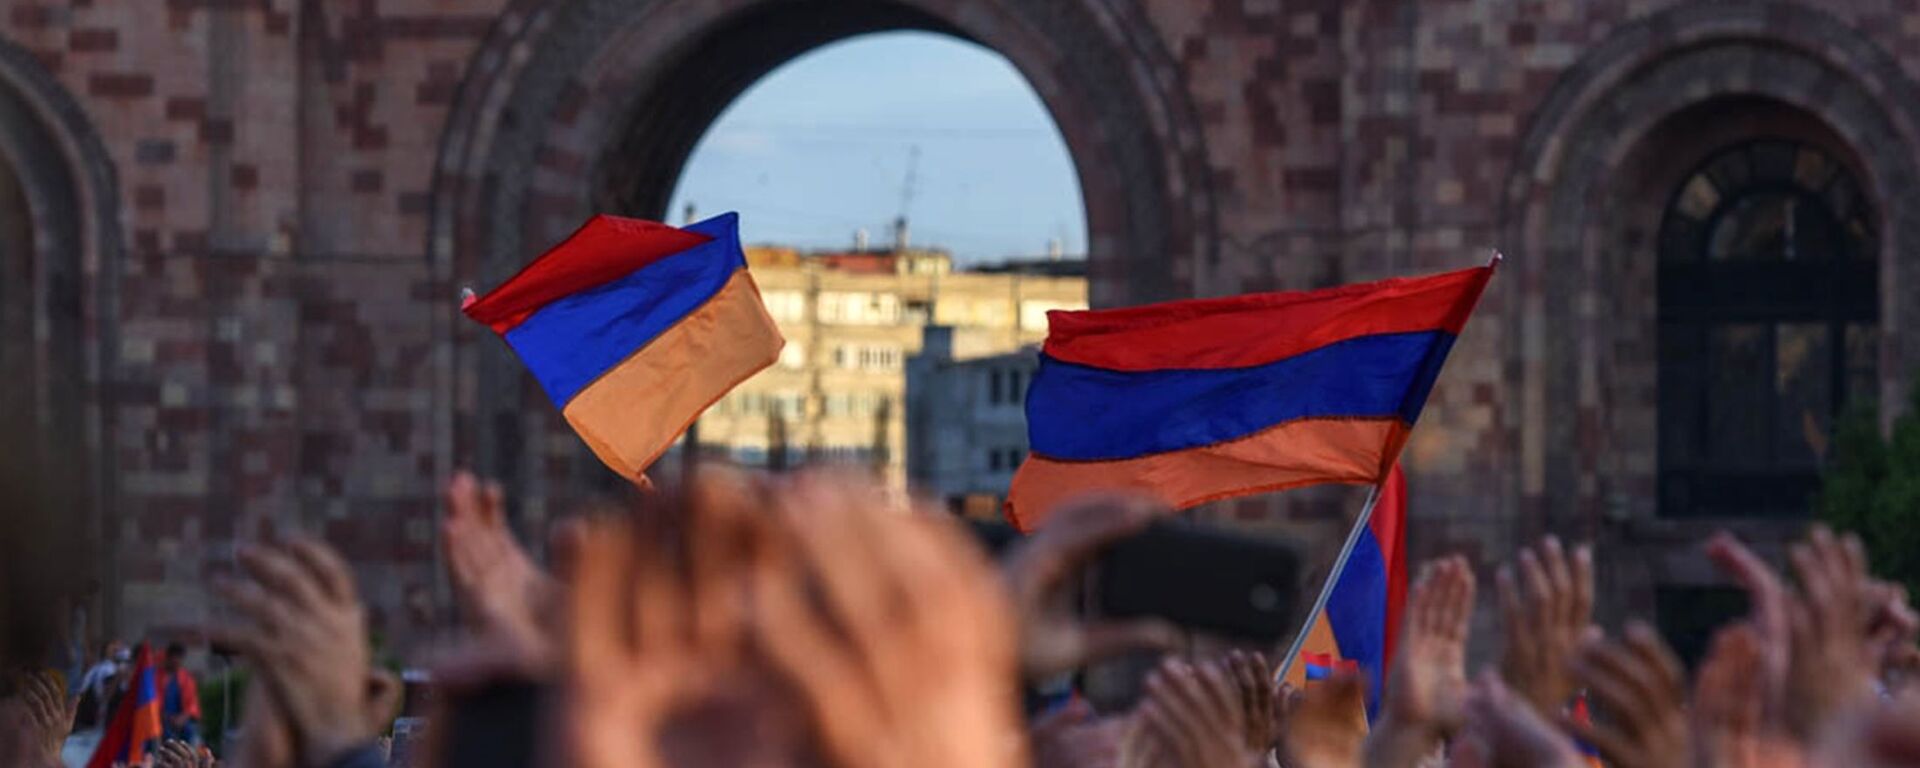 Banderas de Armenia - Sputnik Mundo, 1920, 23.04.2021